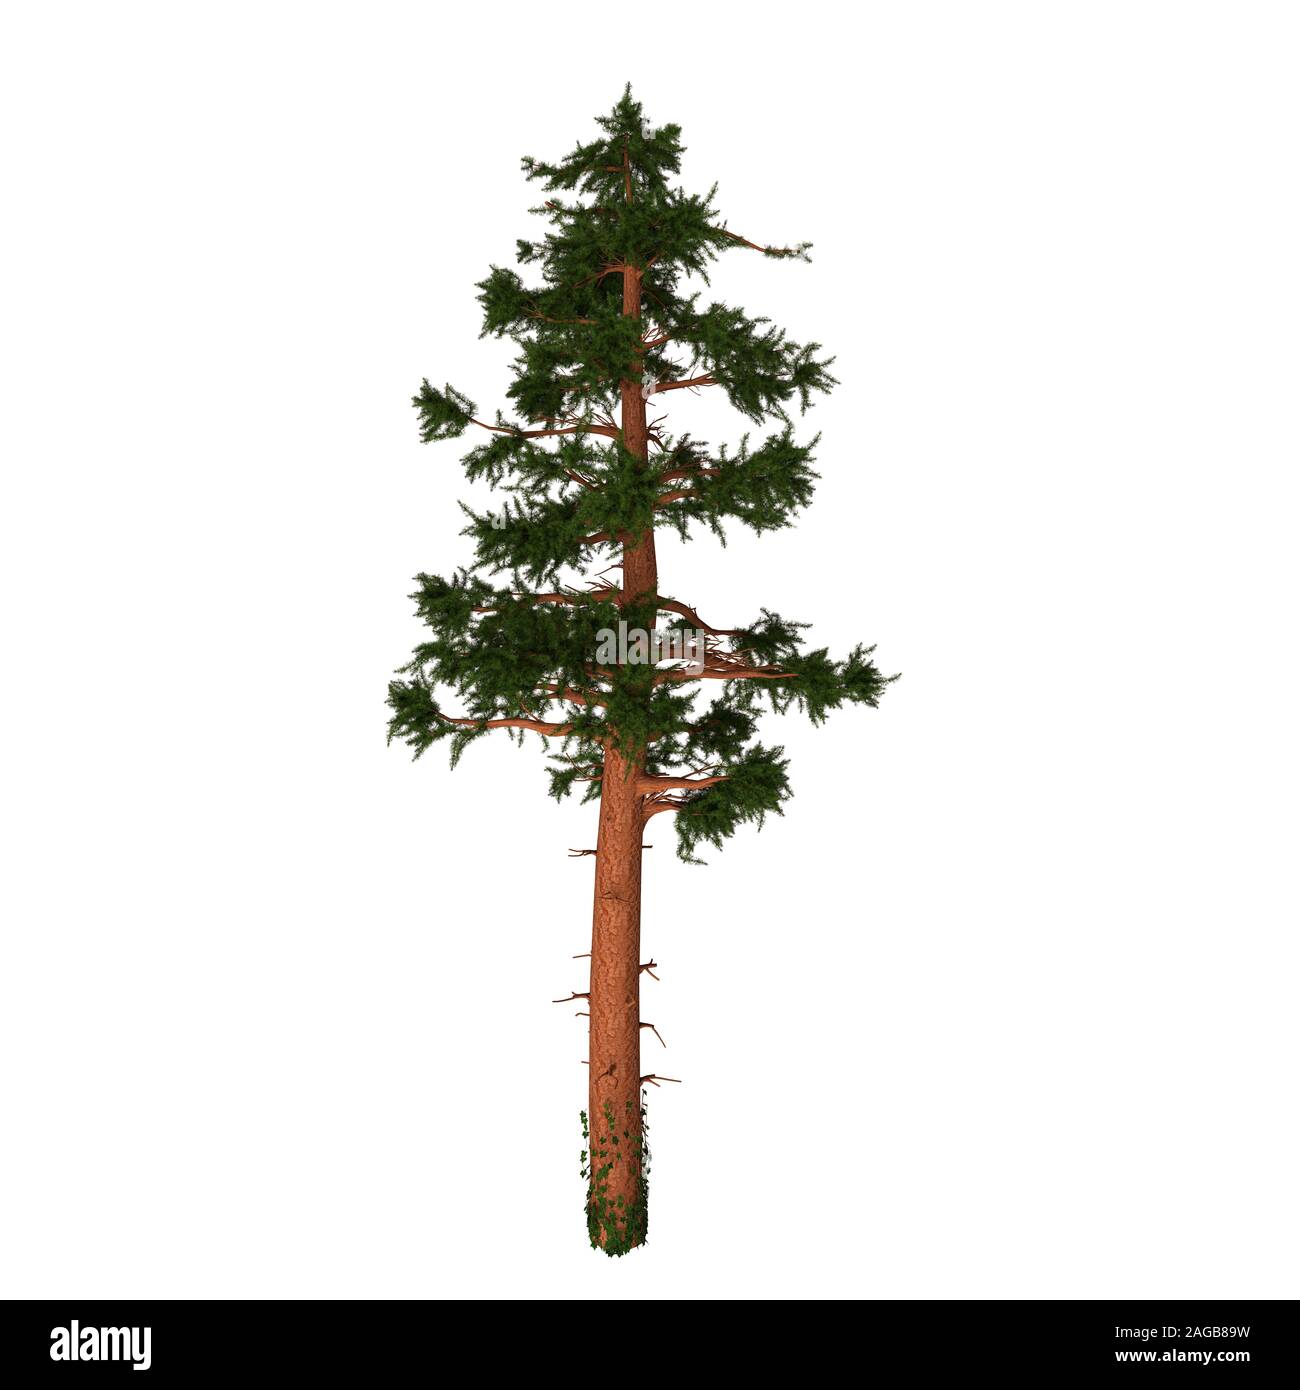 La California Red Fir ou Silvertip est un pin à feuilles persistantes de conifères arbre originaire de l'Oregon et de Californie en Amérique du Nord. Banque D'Images